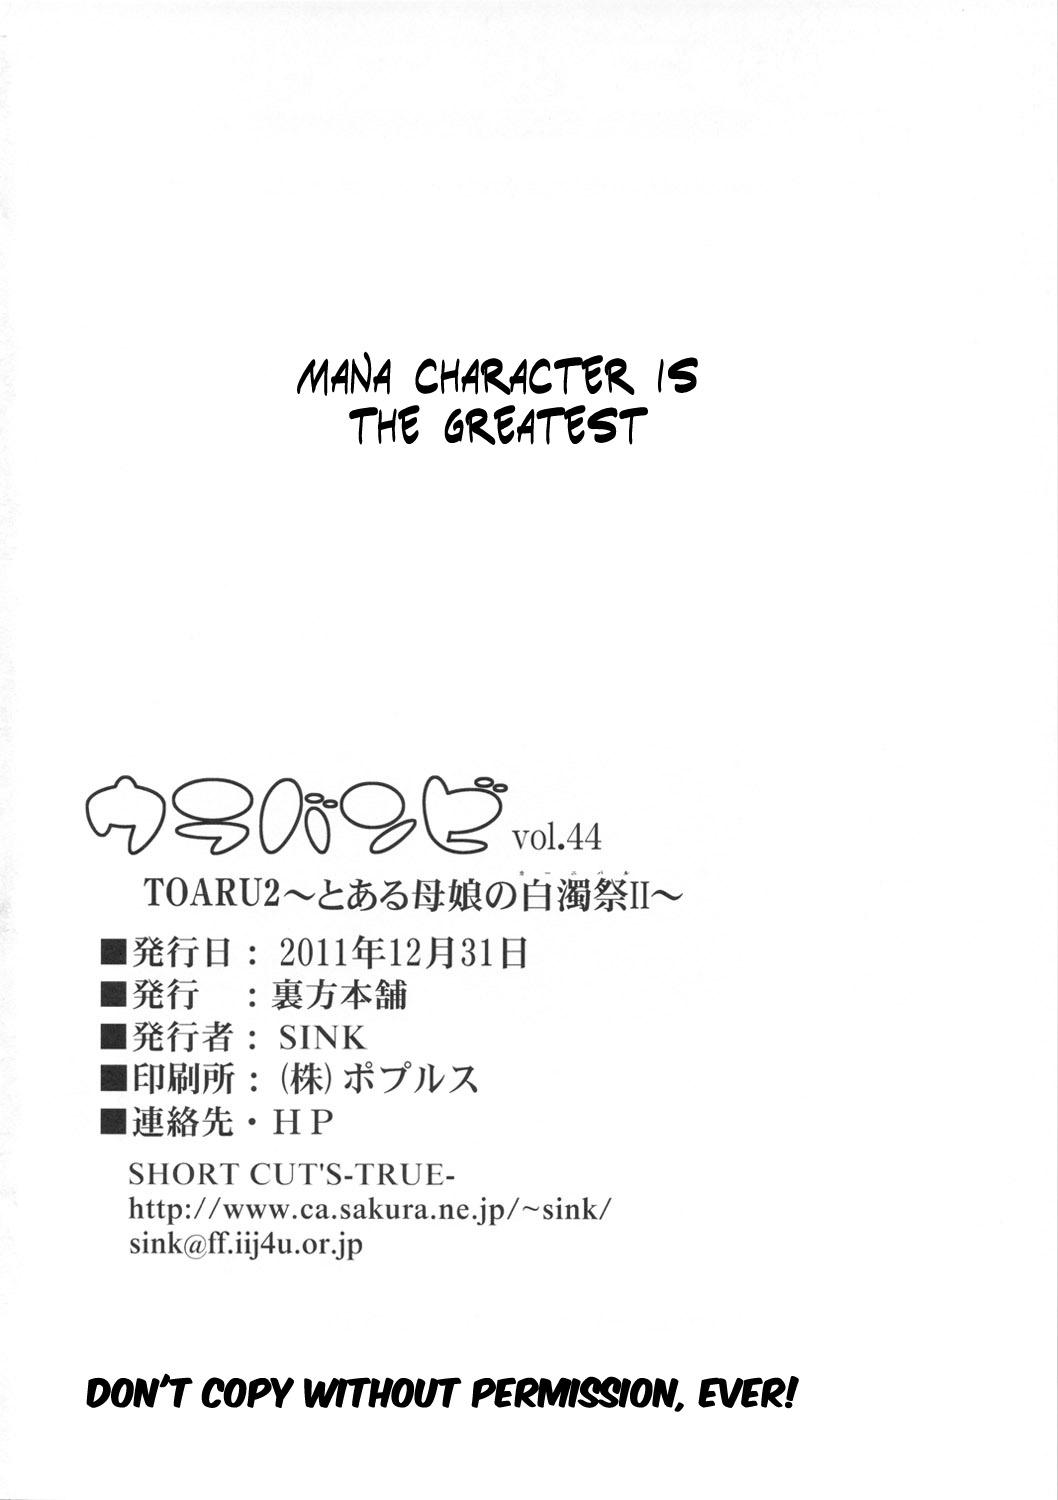 Casero Urabambi Vol. 44 TOARU 2 - Toaru kagaku no railgun Toaru majutsu no index Gordibuena - Page 25